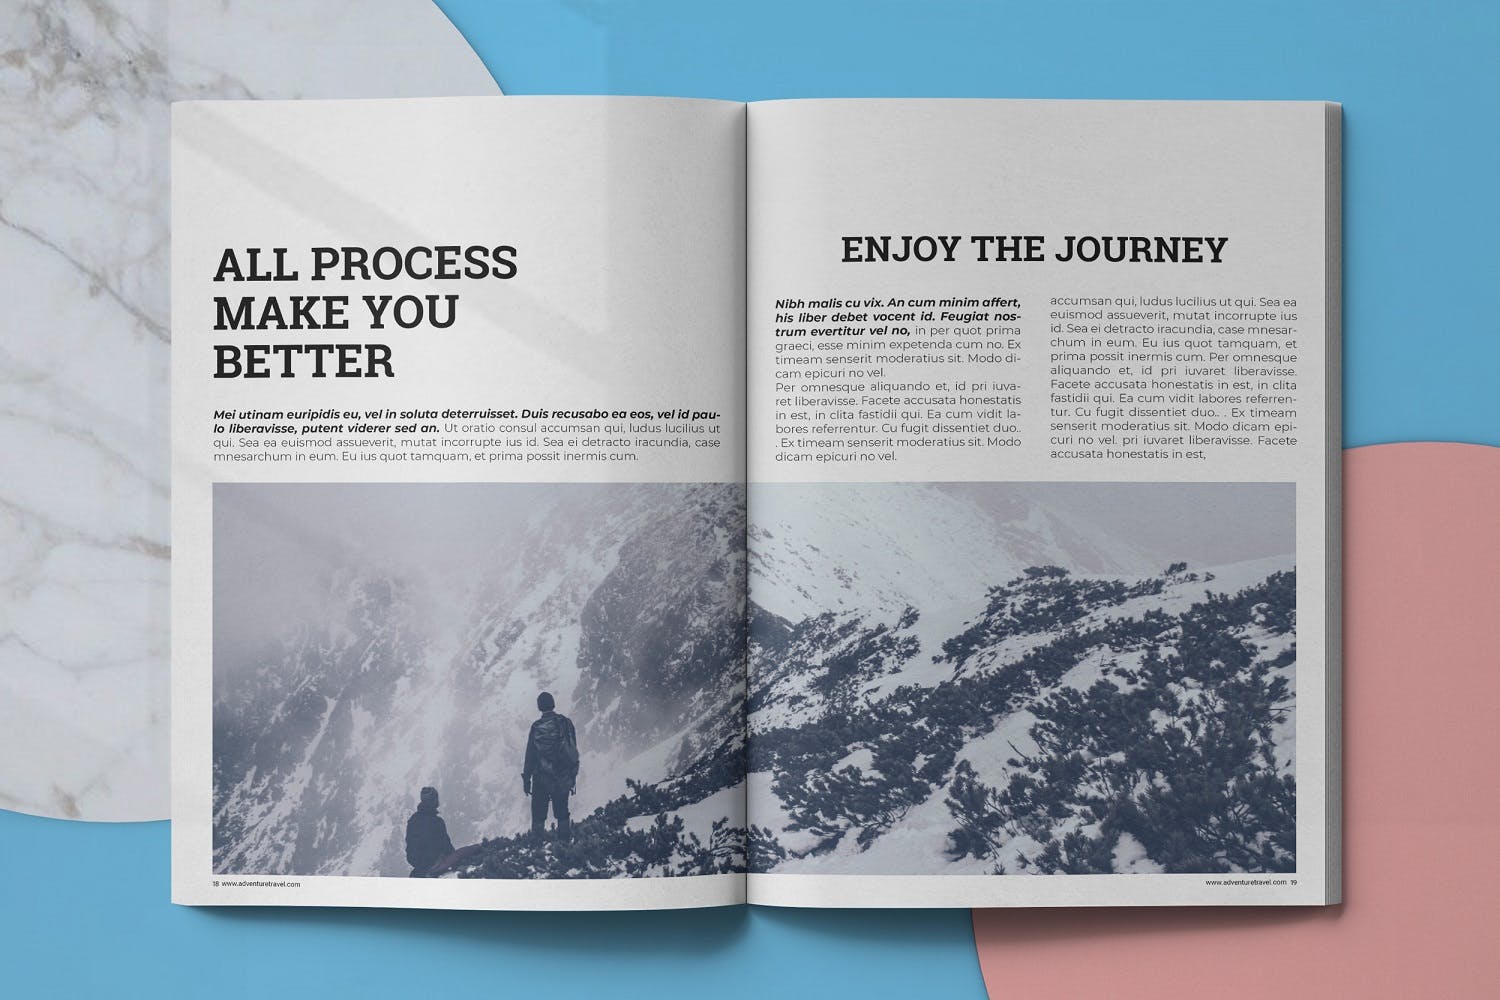 冒险旅行主题大洋岛精选杂志排版设计模板 Adventure Travel Magazine Template插图9